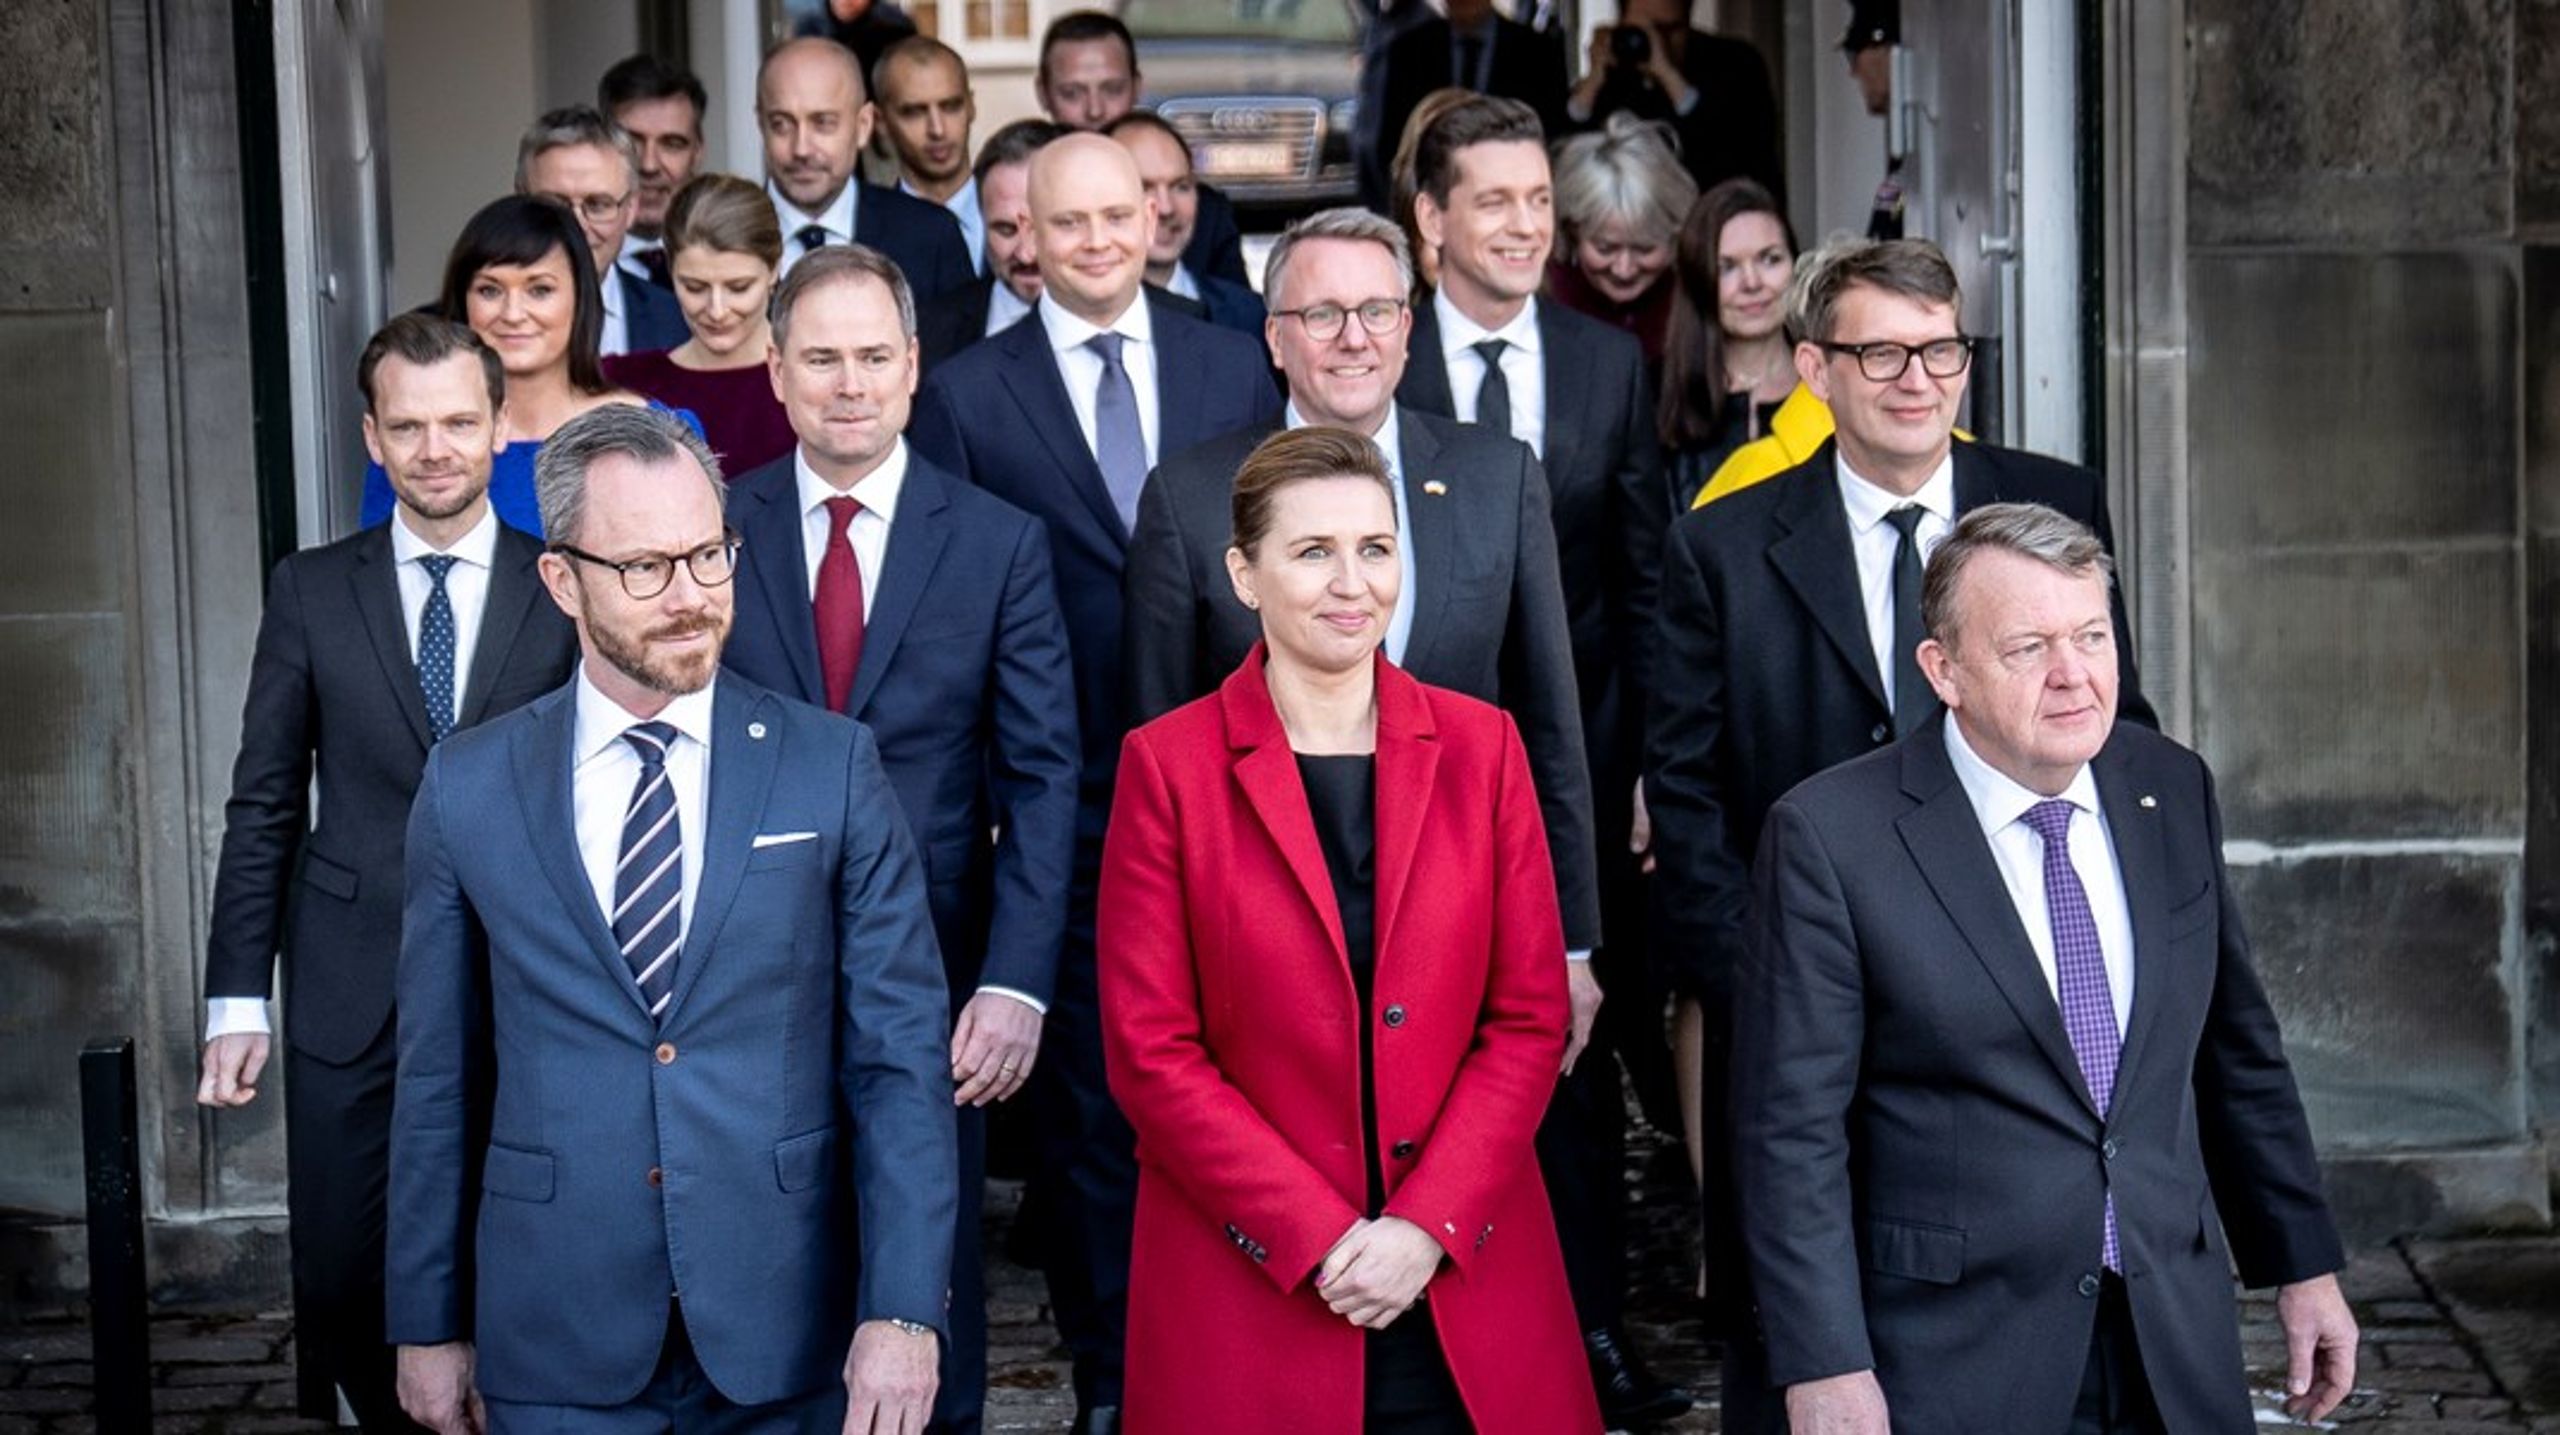 Før jul fik Danmark en ny regering bestående af Venstre, Socialdemokratiet og Moderaterne. I næste uge præsenter de et katalog over de love, de vil fremlægge i Folketinget.